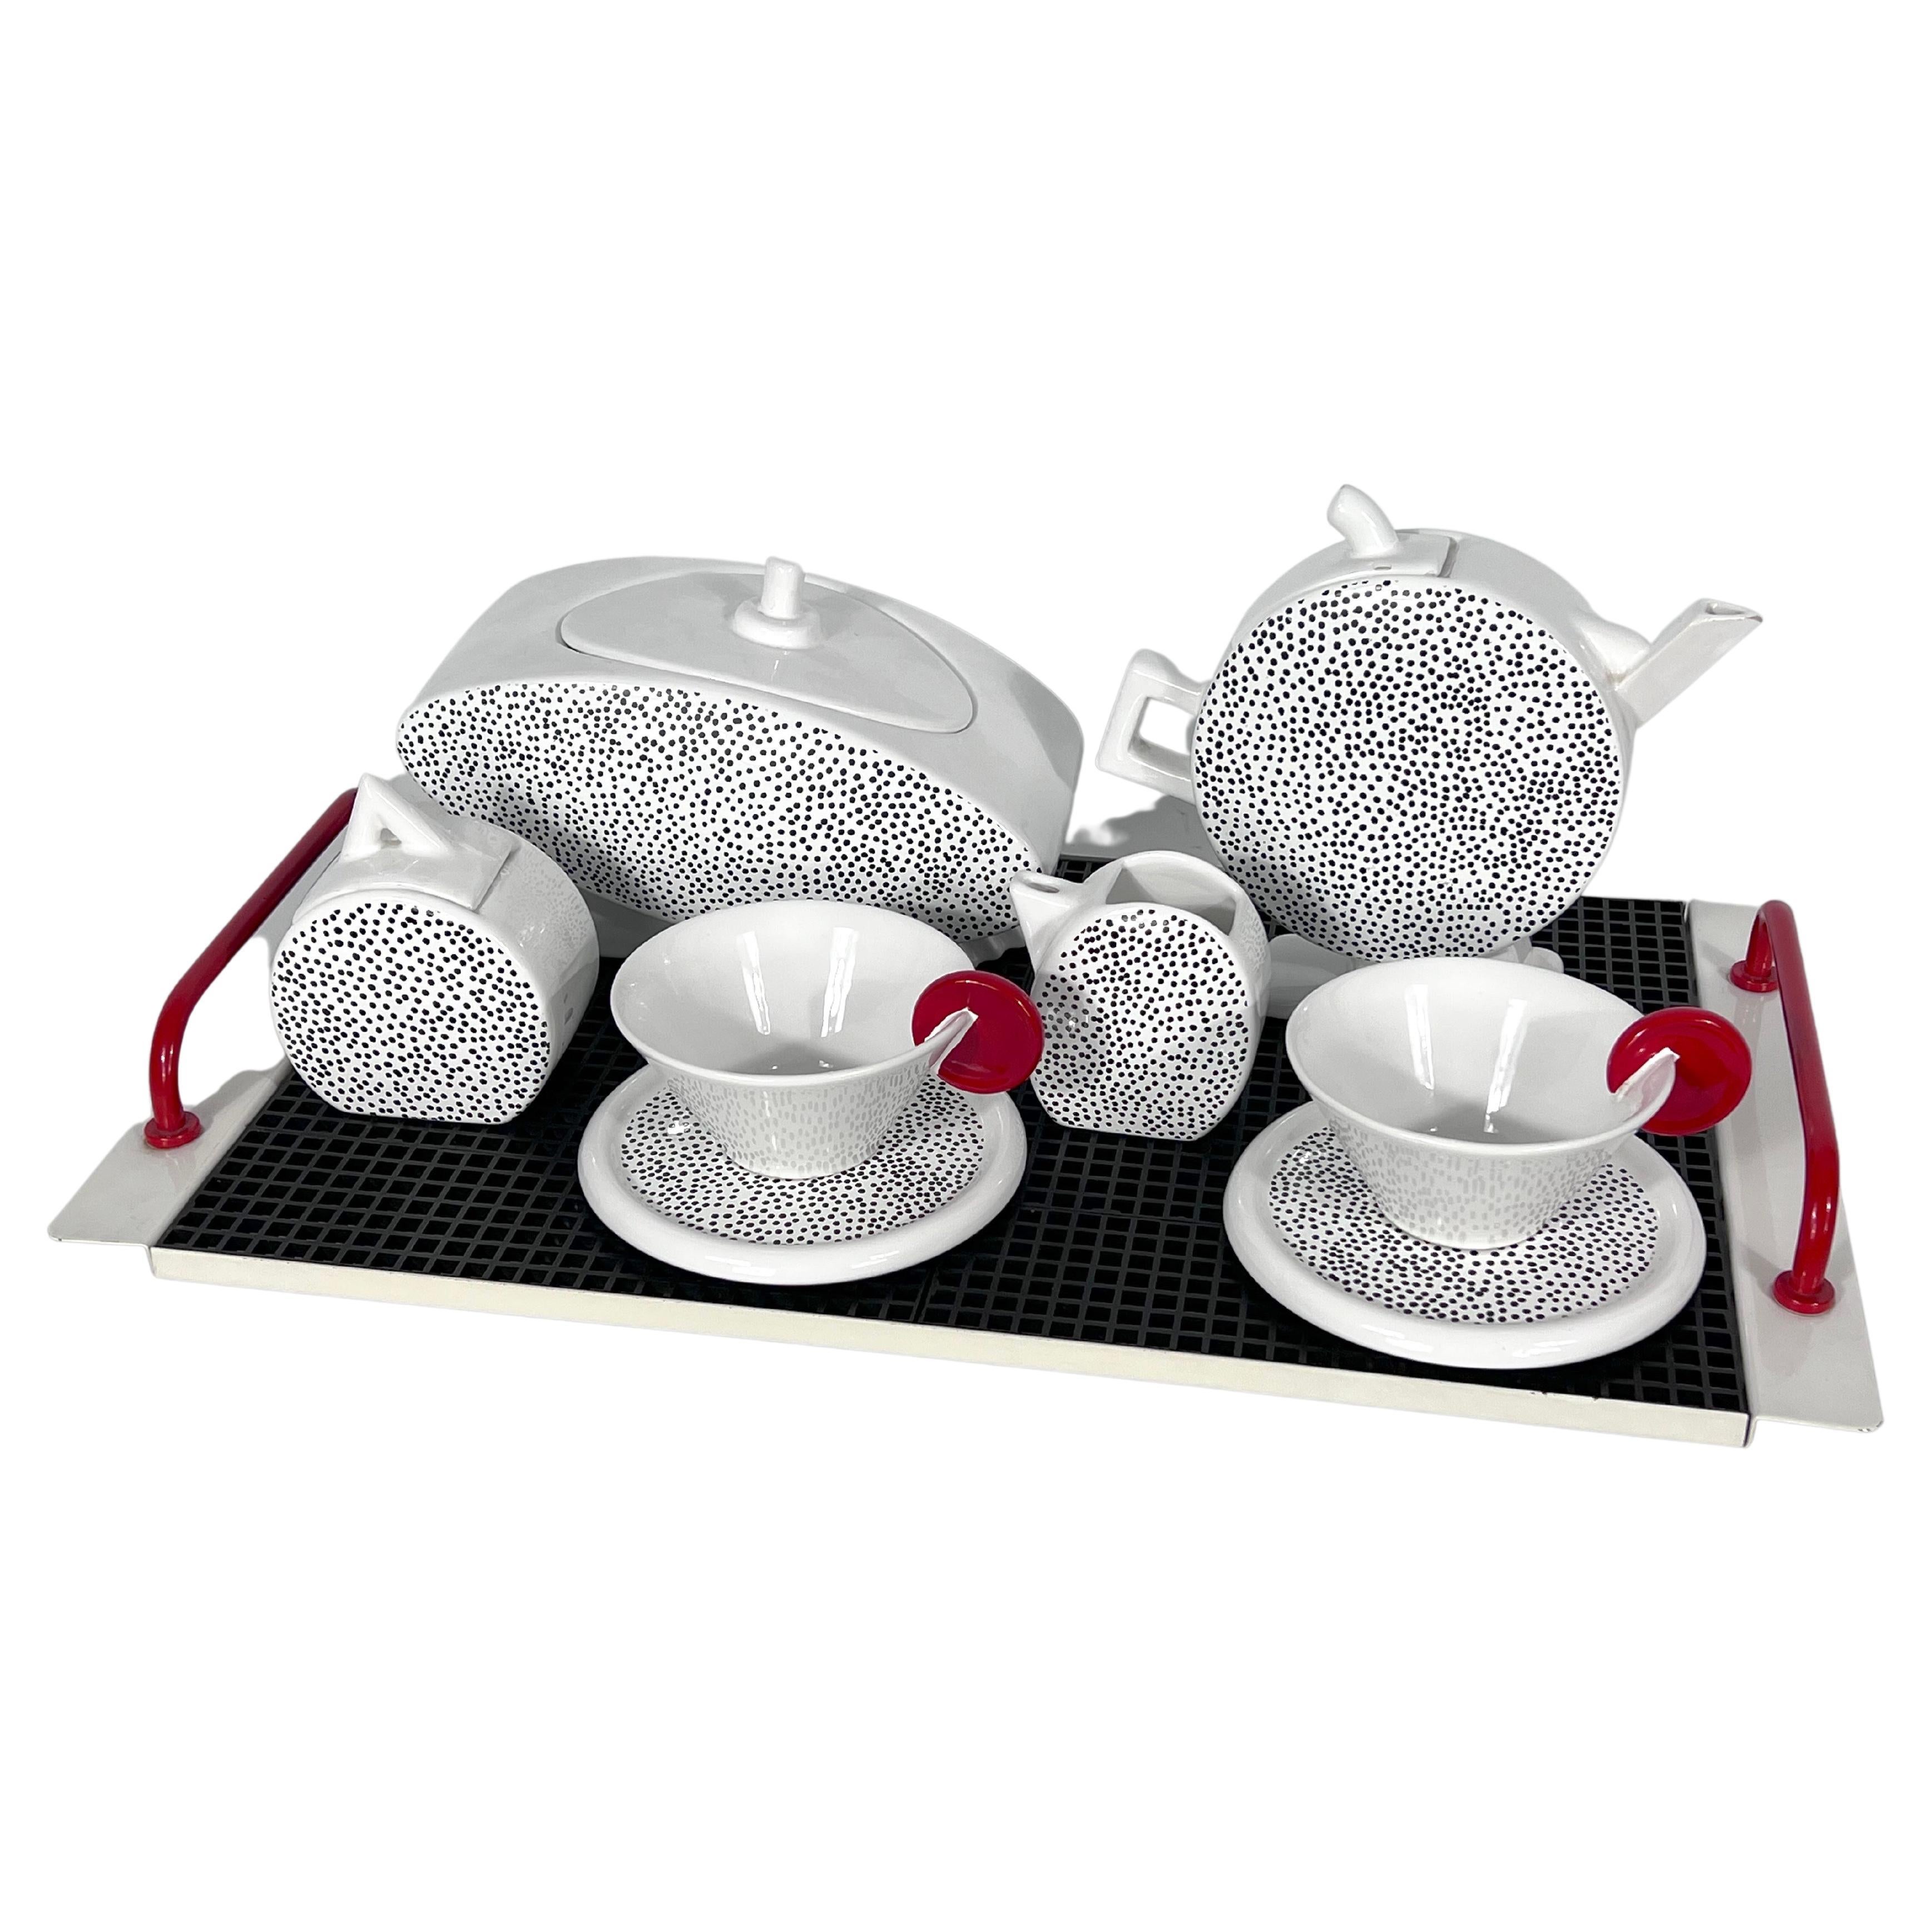 Ceramic Tea Set by Mas for Memphis Milano, 1980s, Set of 7